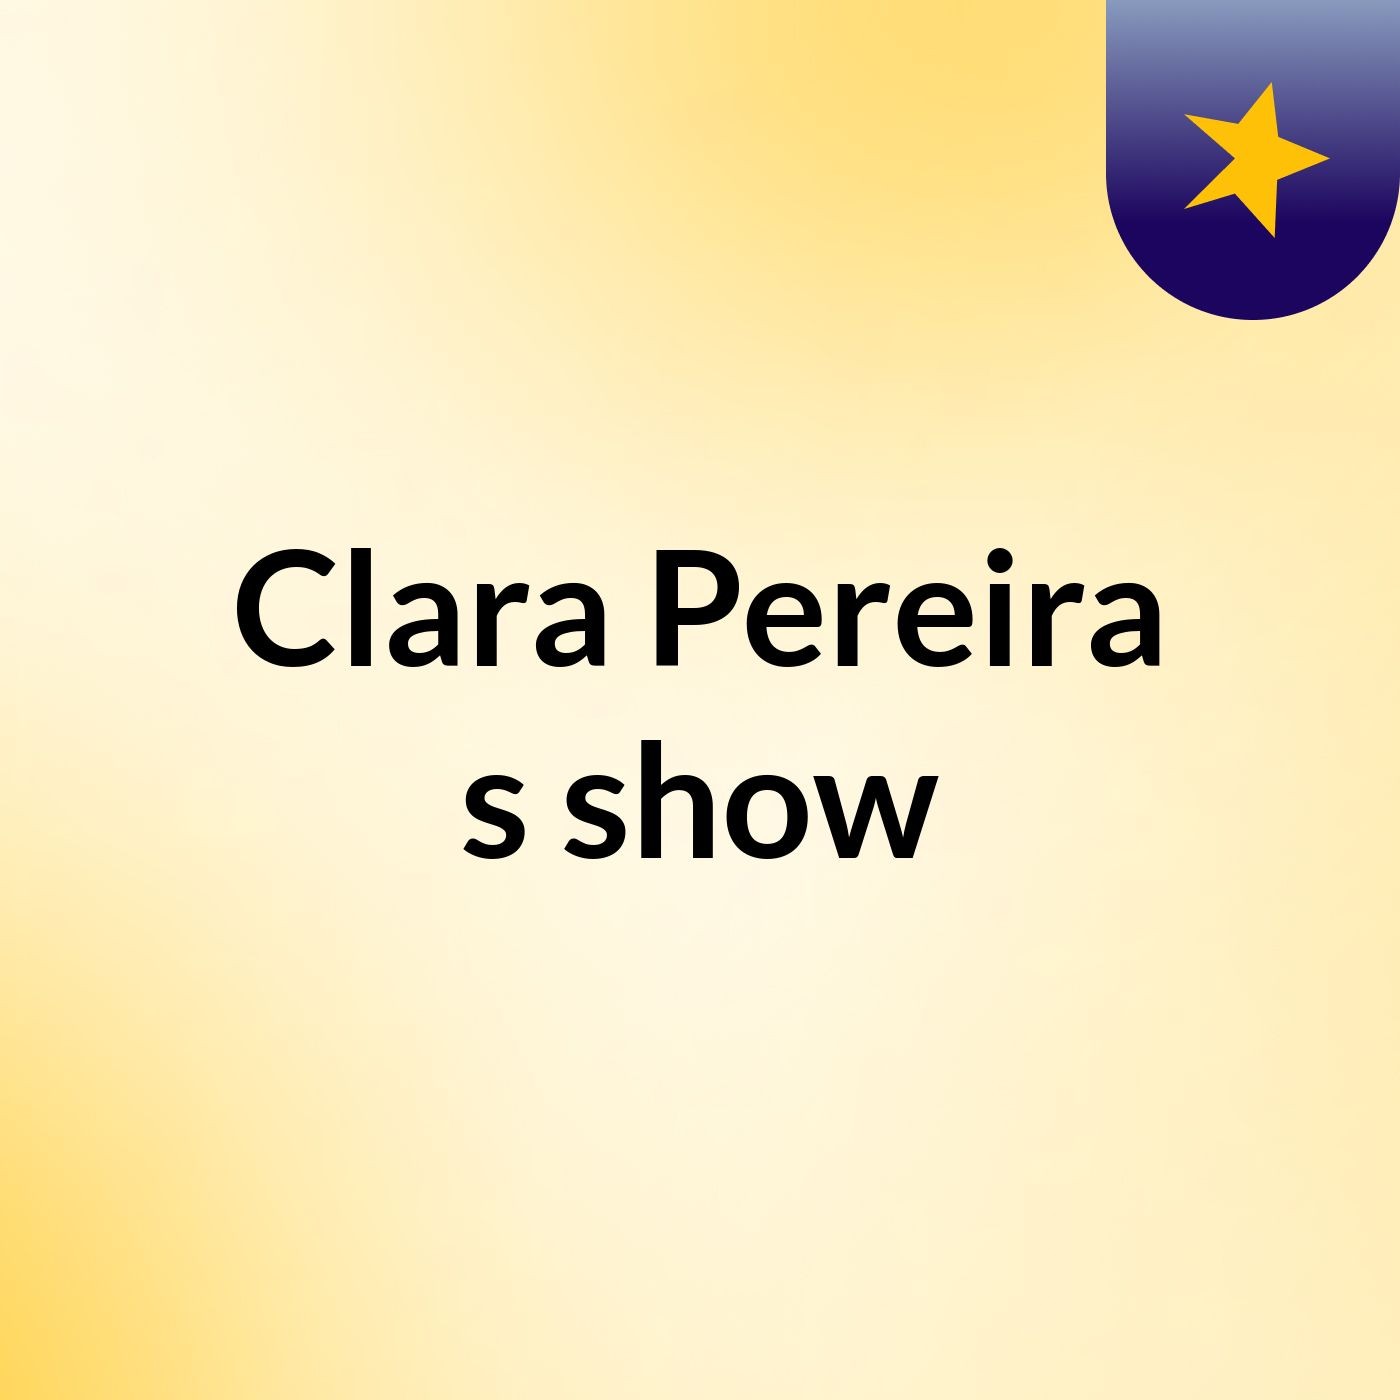 Clara Pereira's show